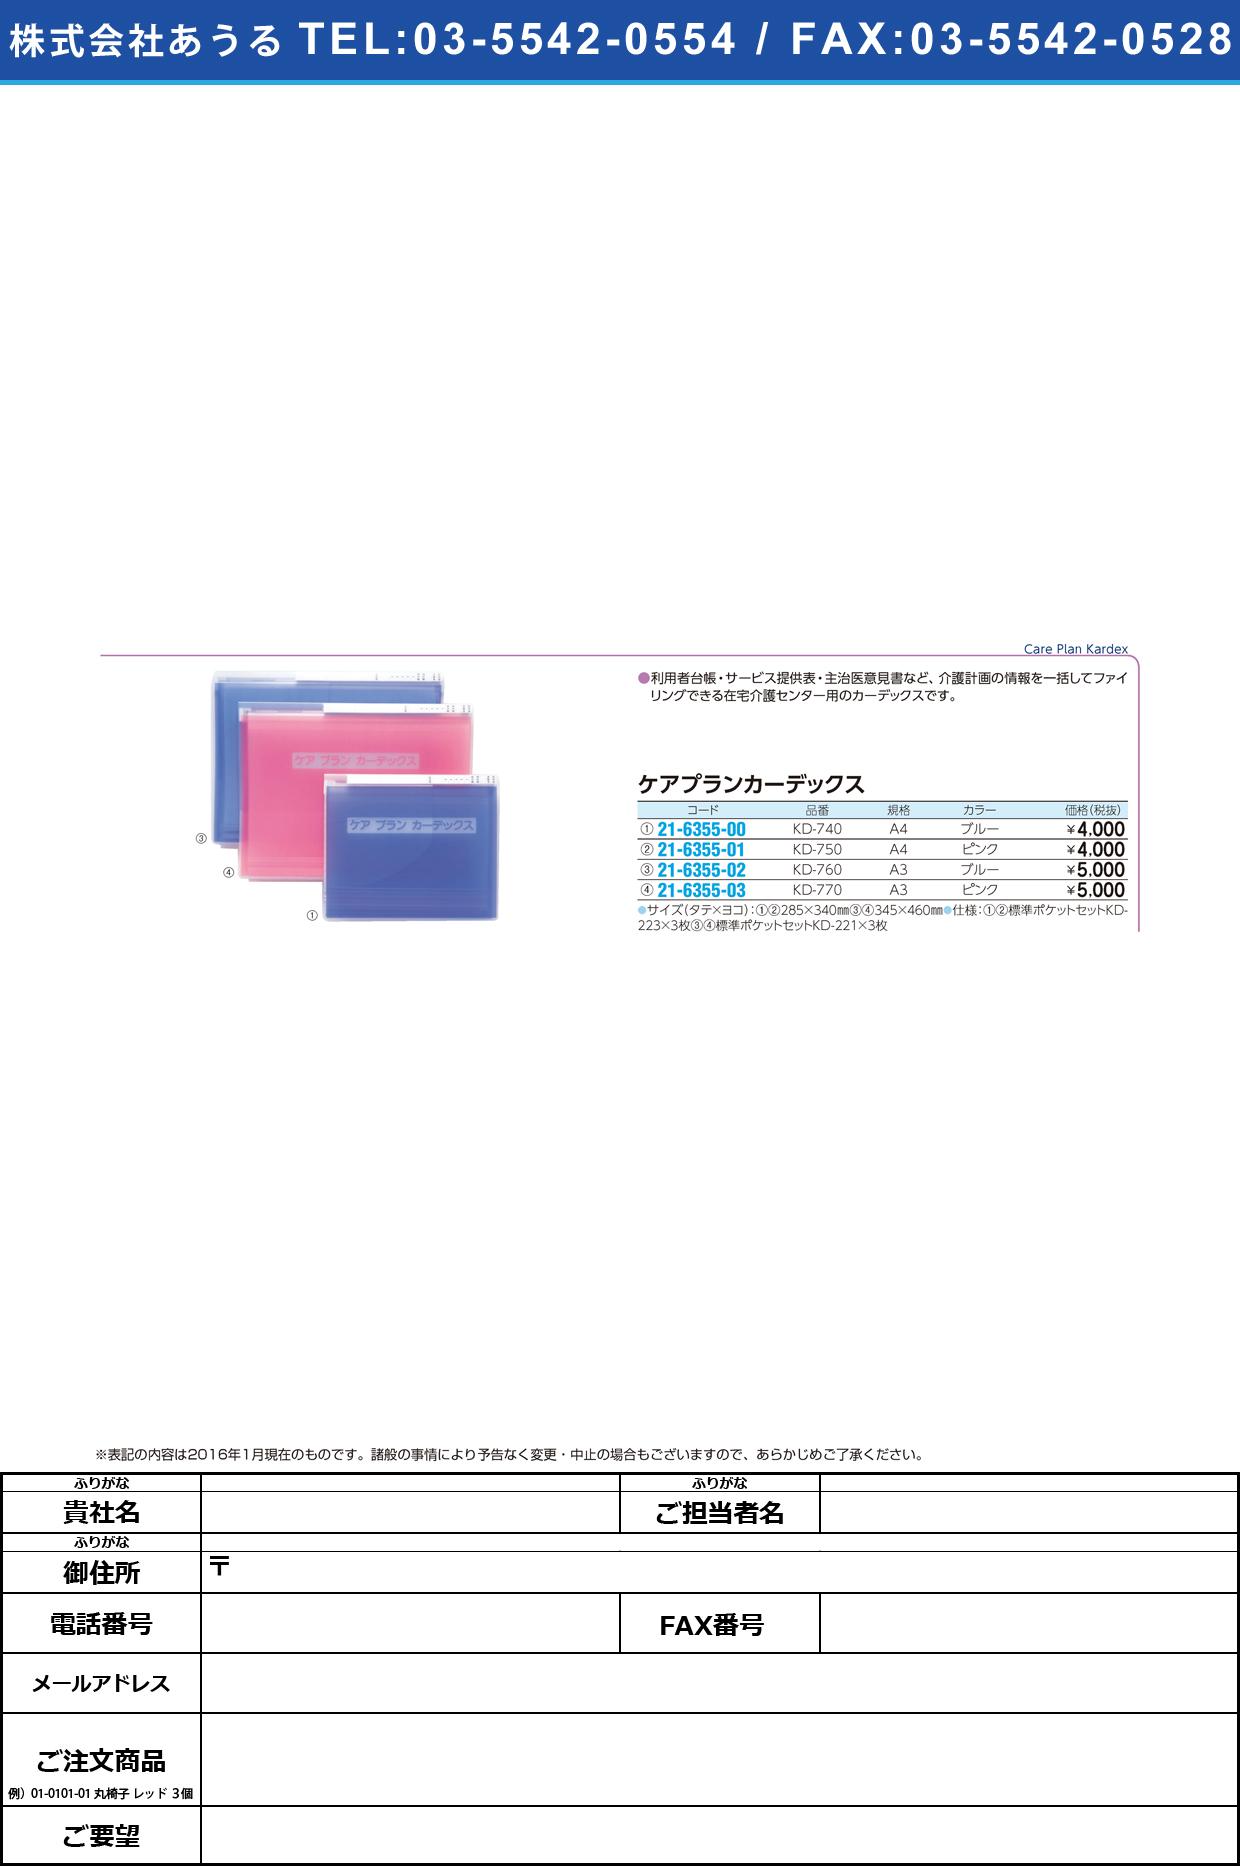 ケアプランカーデックス     ｹｱﾌﾟﾗﾝｶｰﾃﾞｯｸｽ KD-740(A4)ﾌﾞﾙｰ【1冊単位】(21-6355-00)